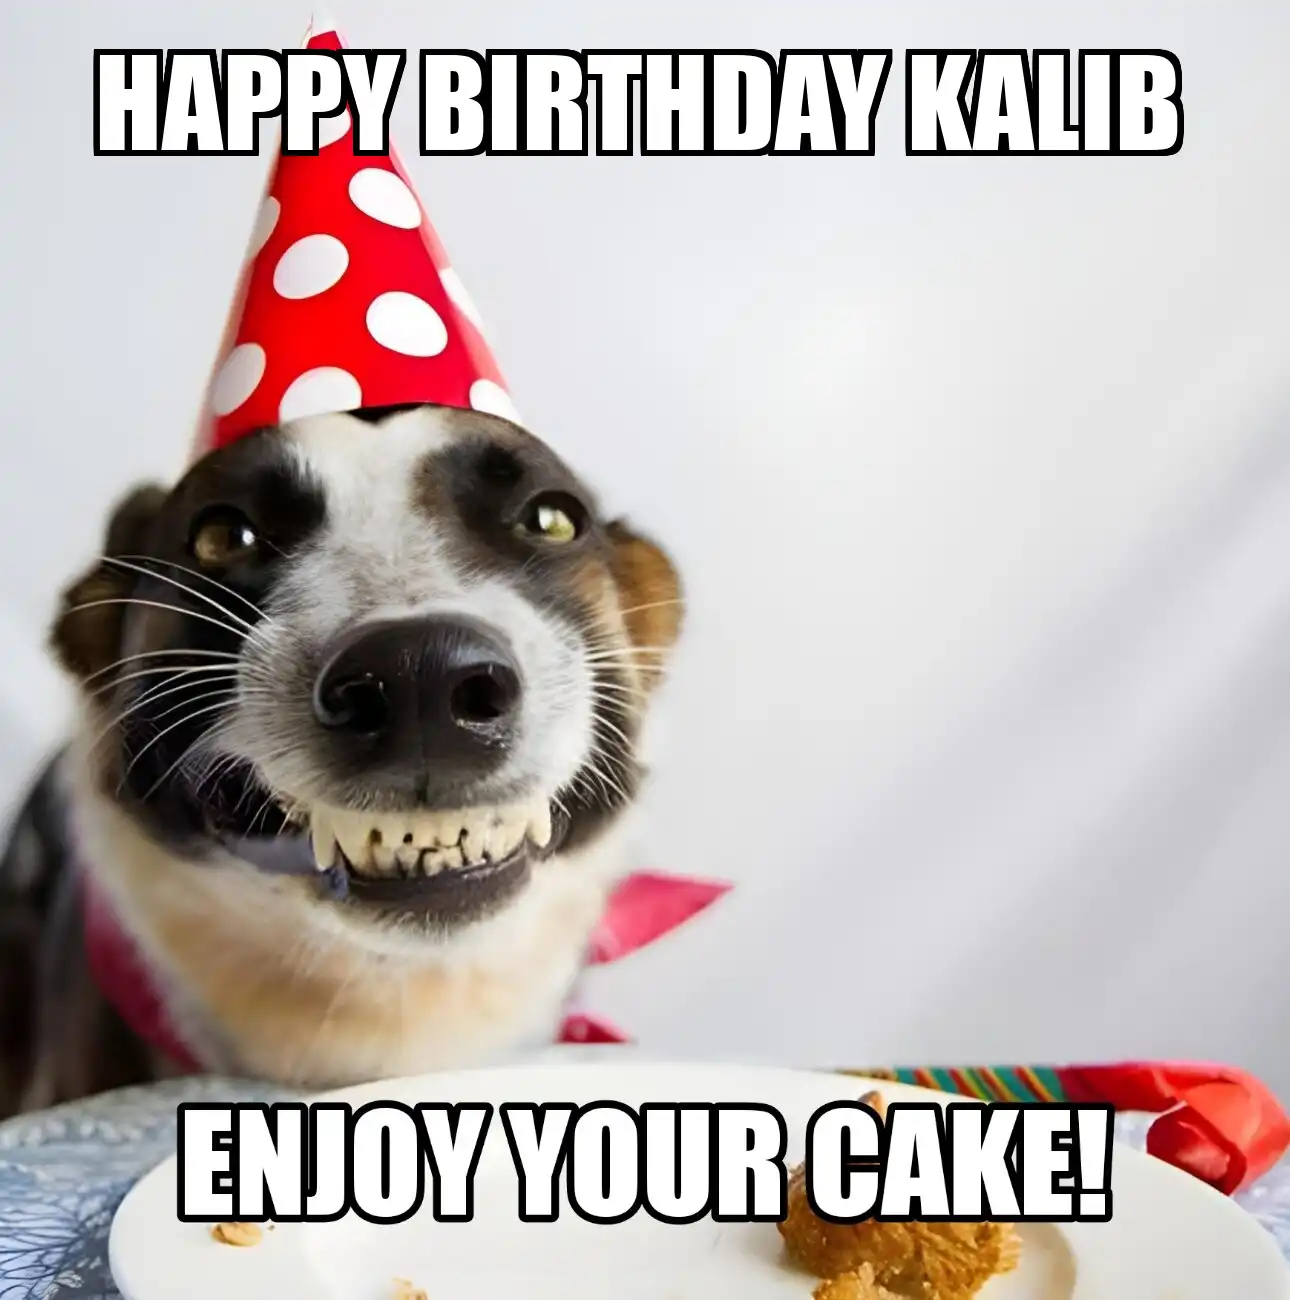 Happy Birthday Kalib Enjoy Your Cake Dog Meme